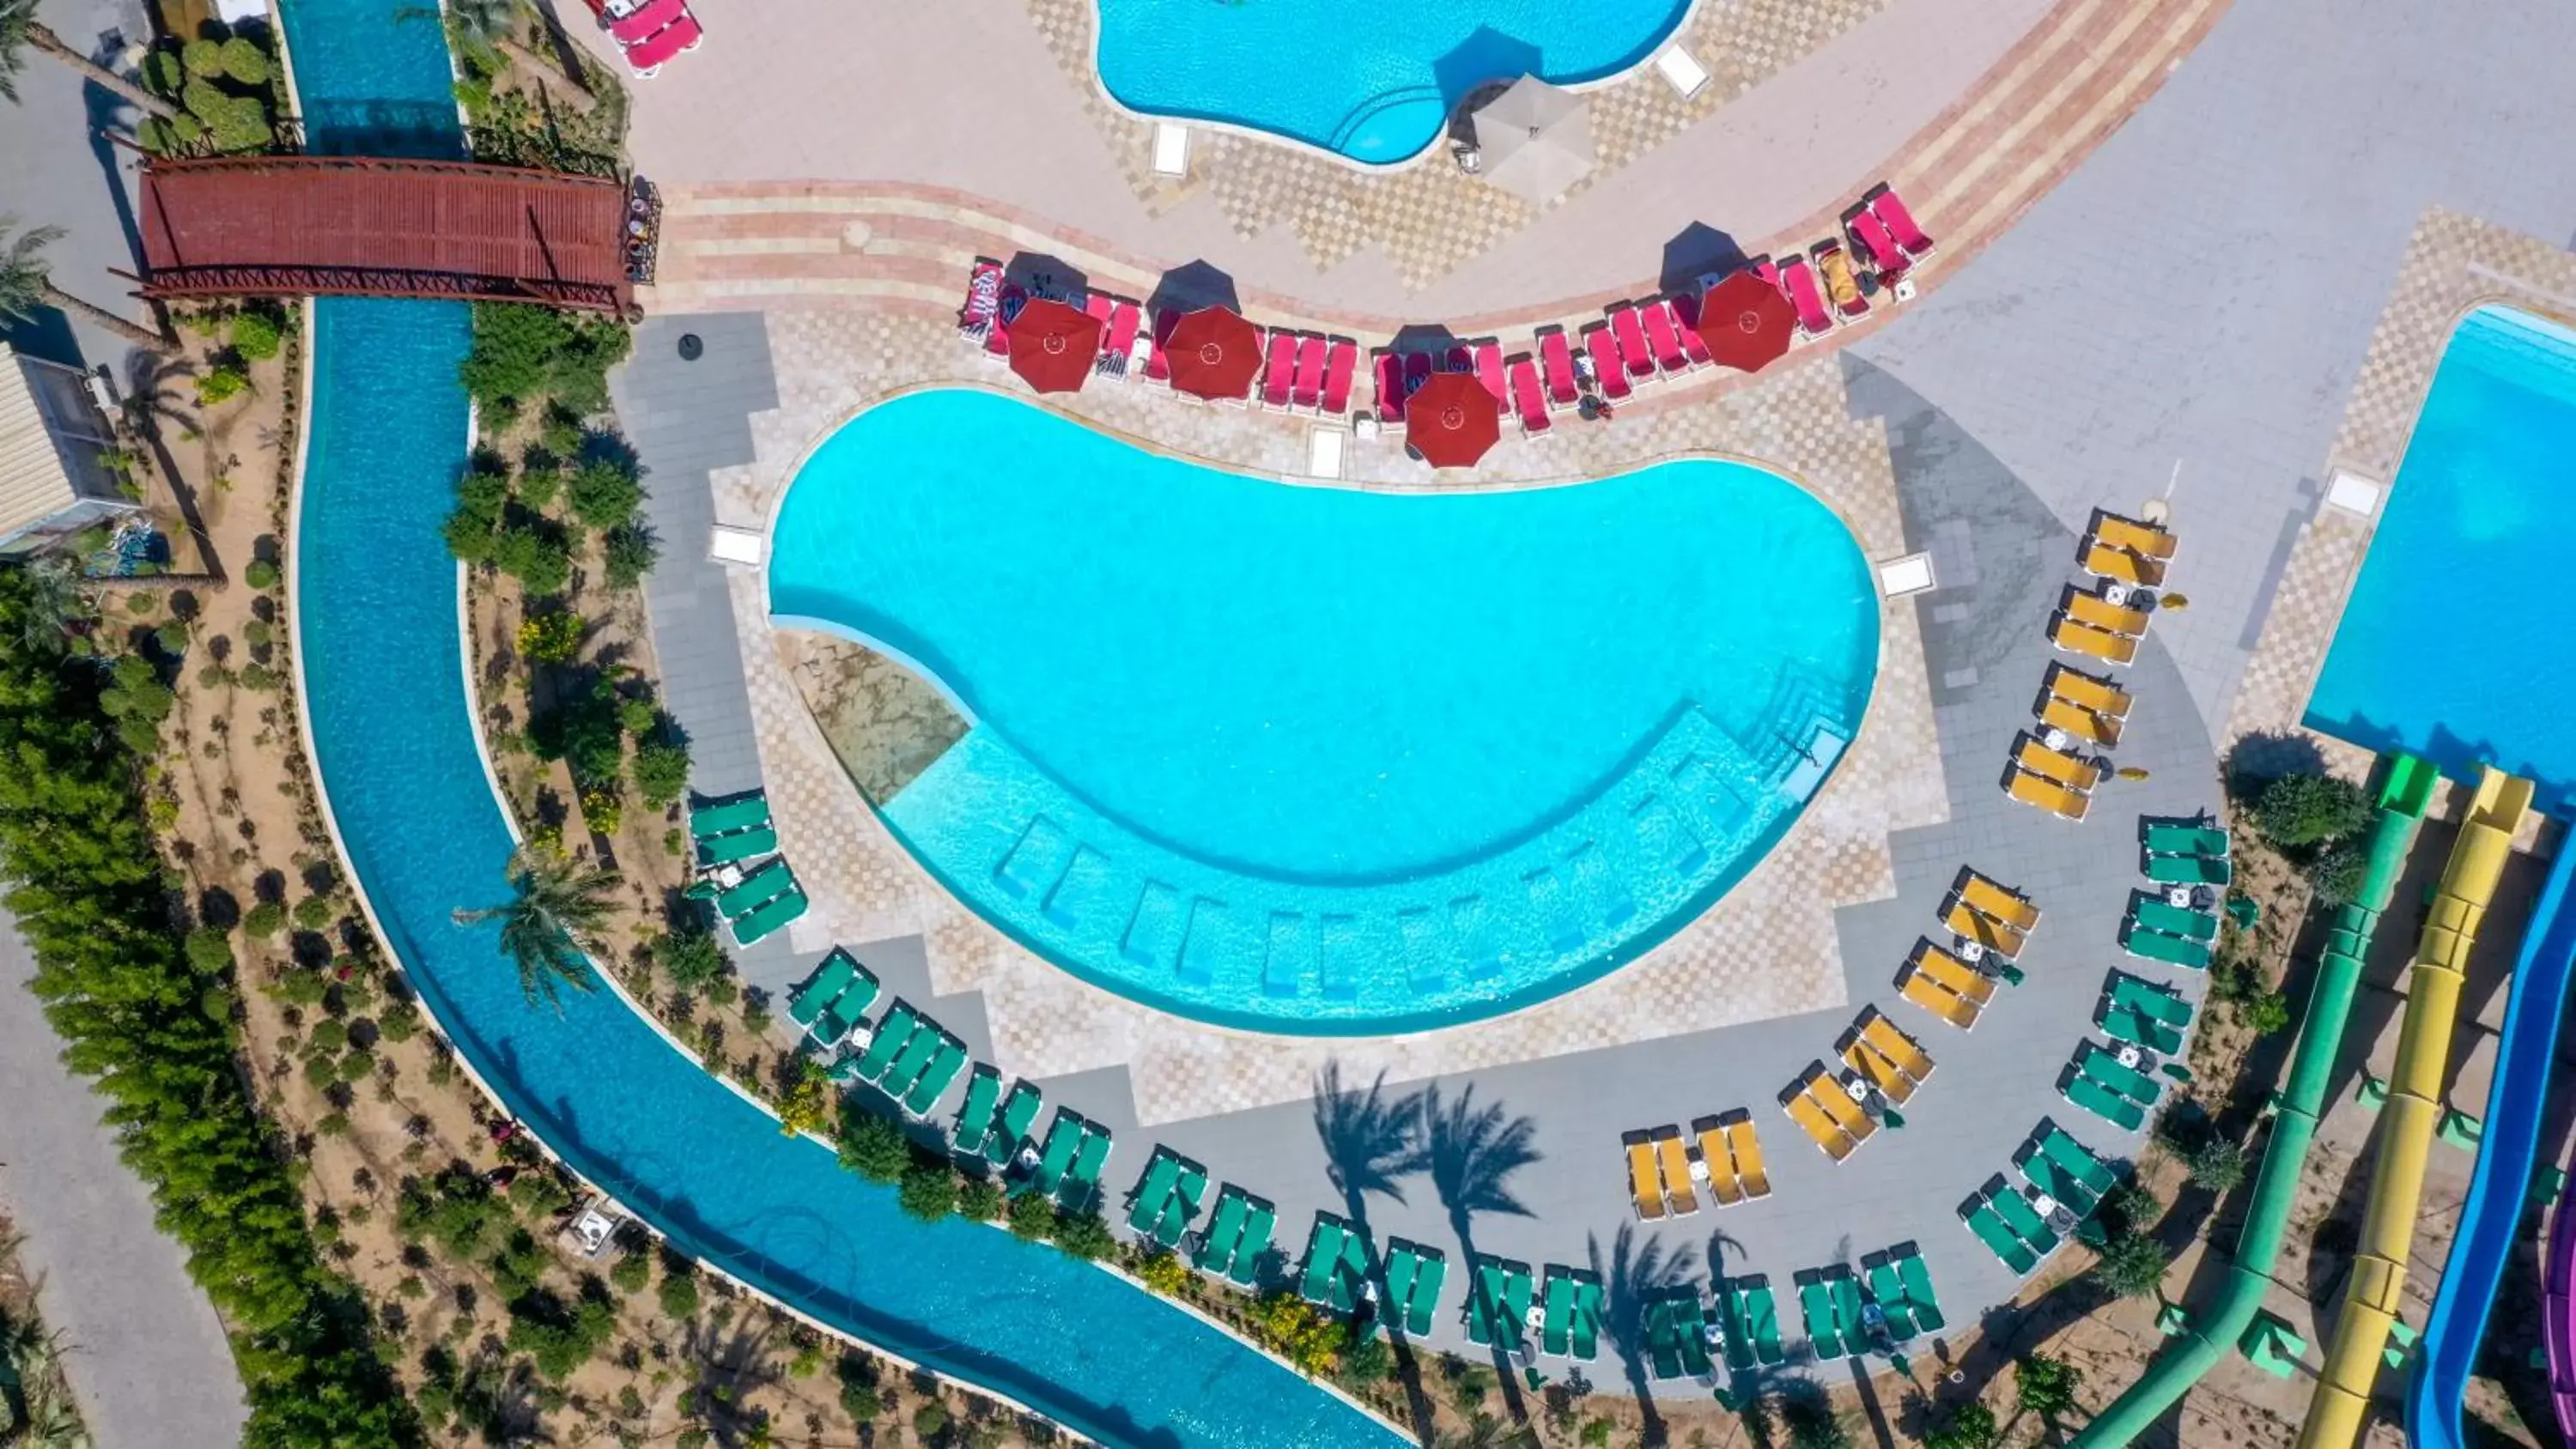 Aqua park, Pool View in Blend Club Aqua Resort